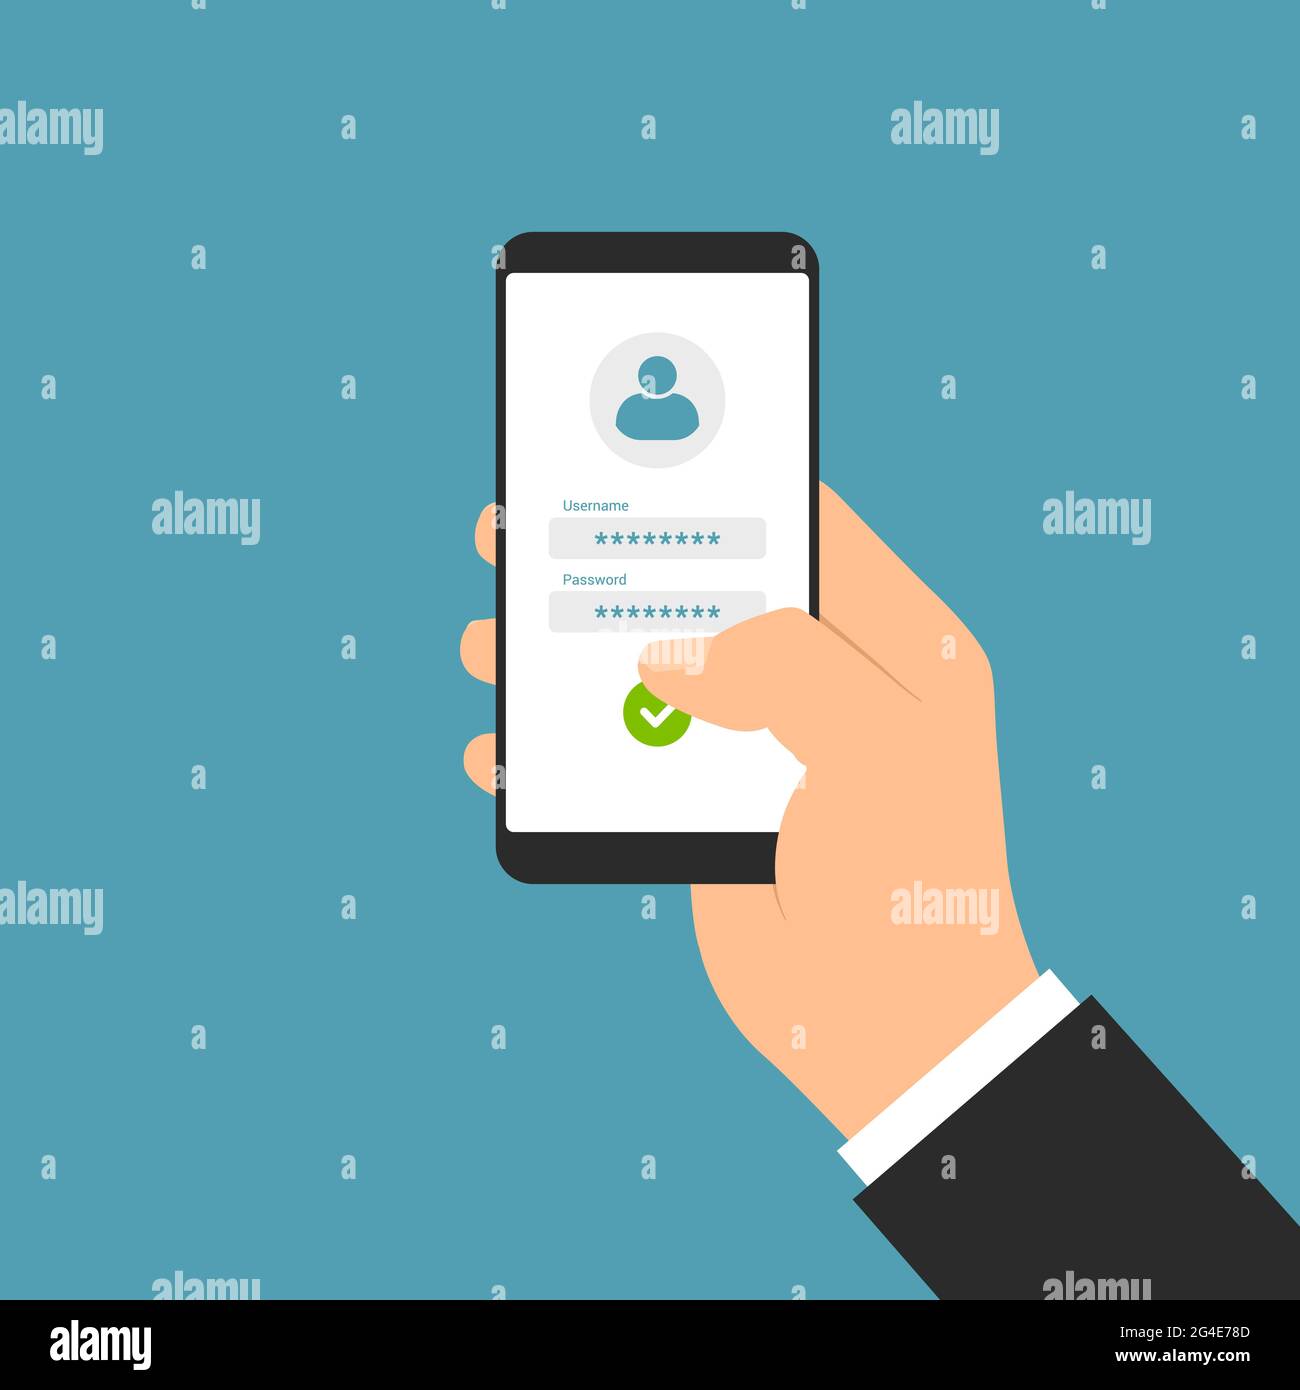 Disegno piatto illustrazione del gestore mano che tiene lo smartphone con touch screen bianco e il modulo di login per l'immissione di nome utente e password - vettore Illustrazione Vettoriale